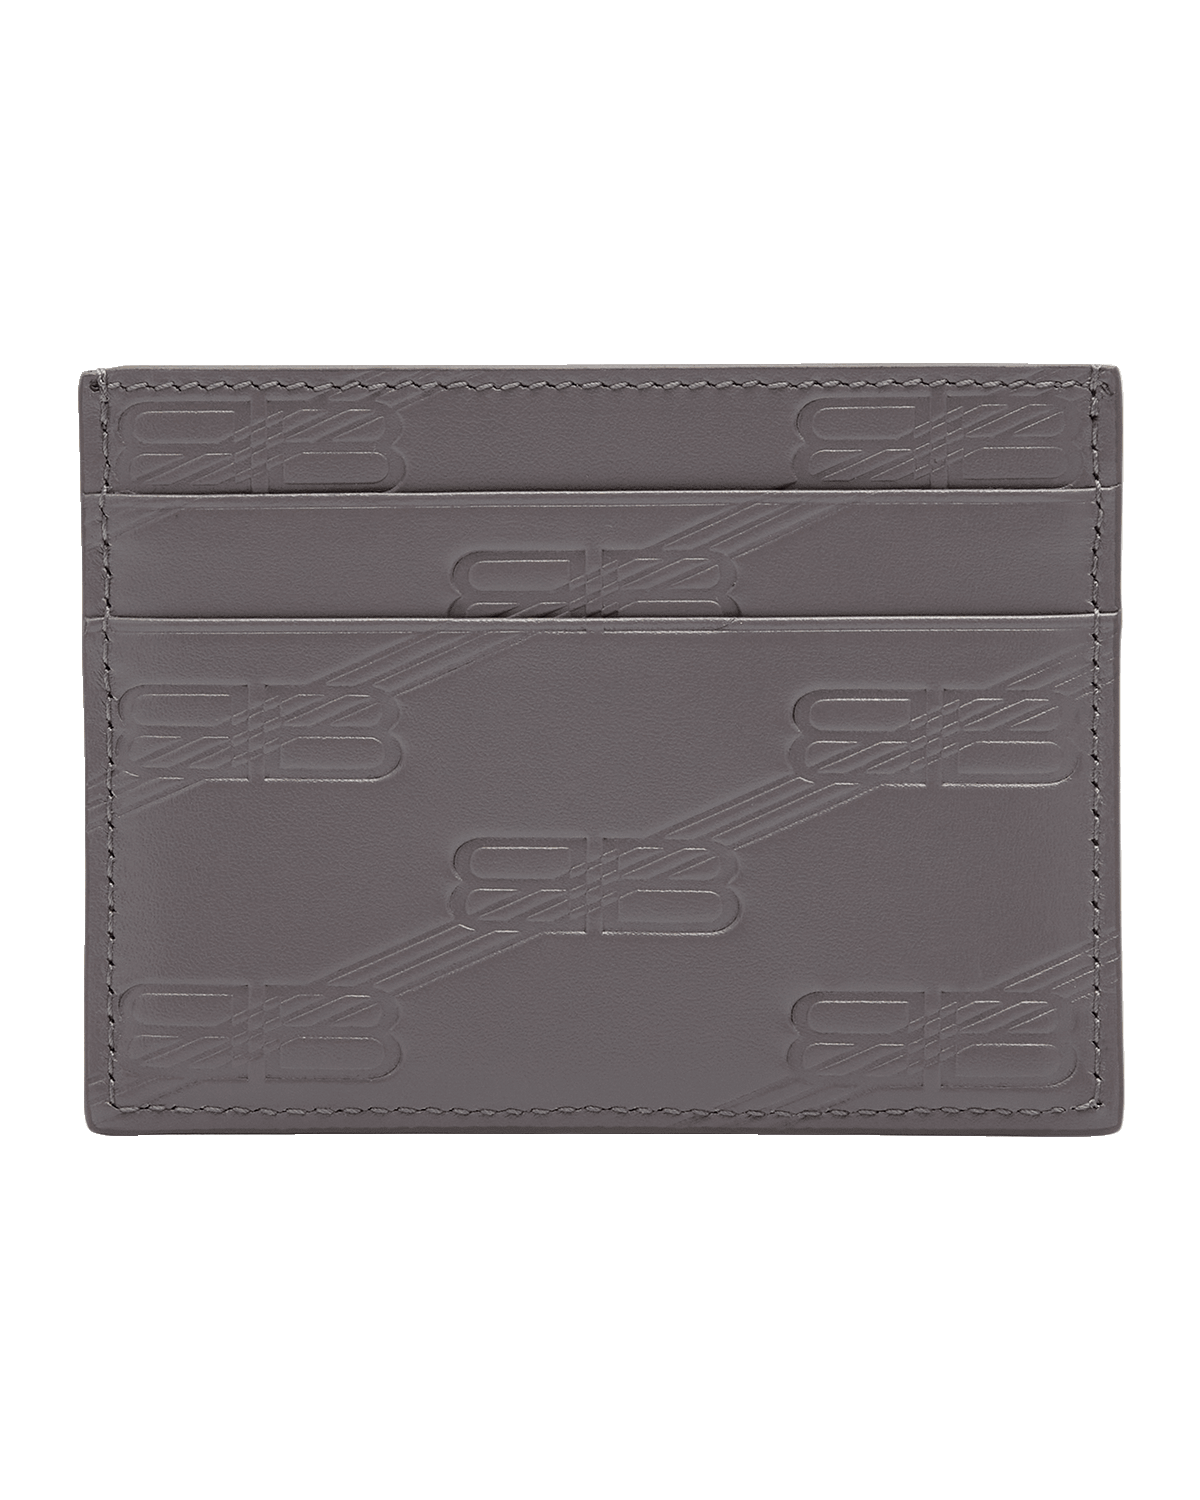 Saint Laurent Men's Imprint Black Leather Crocodile Card Case 396935 1000 -  One Size / Black